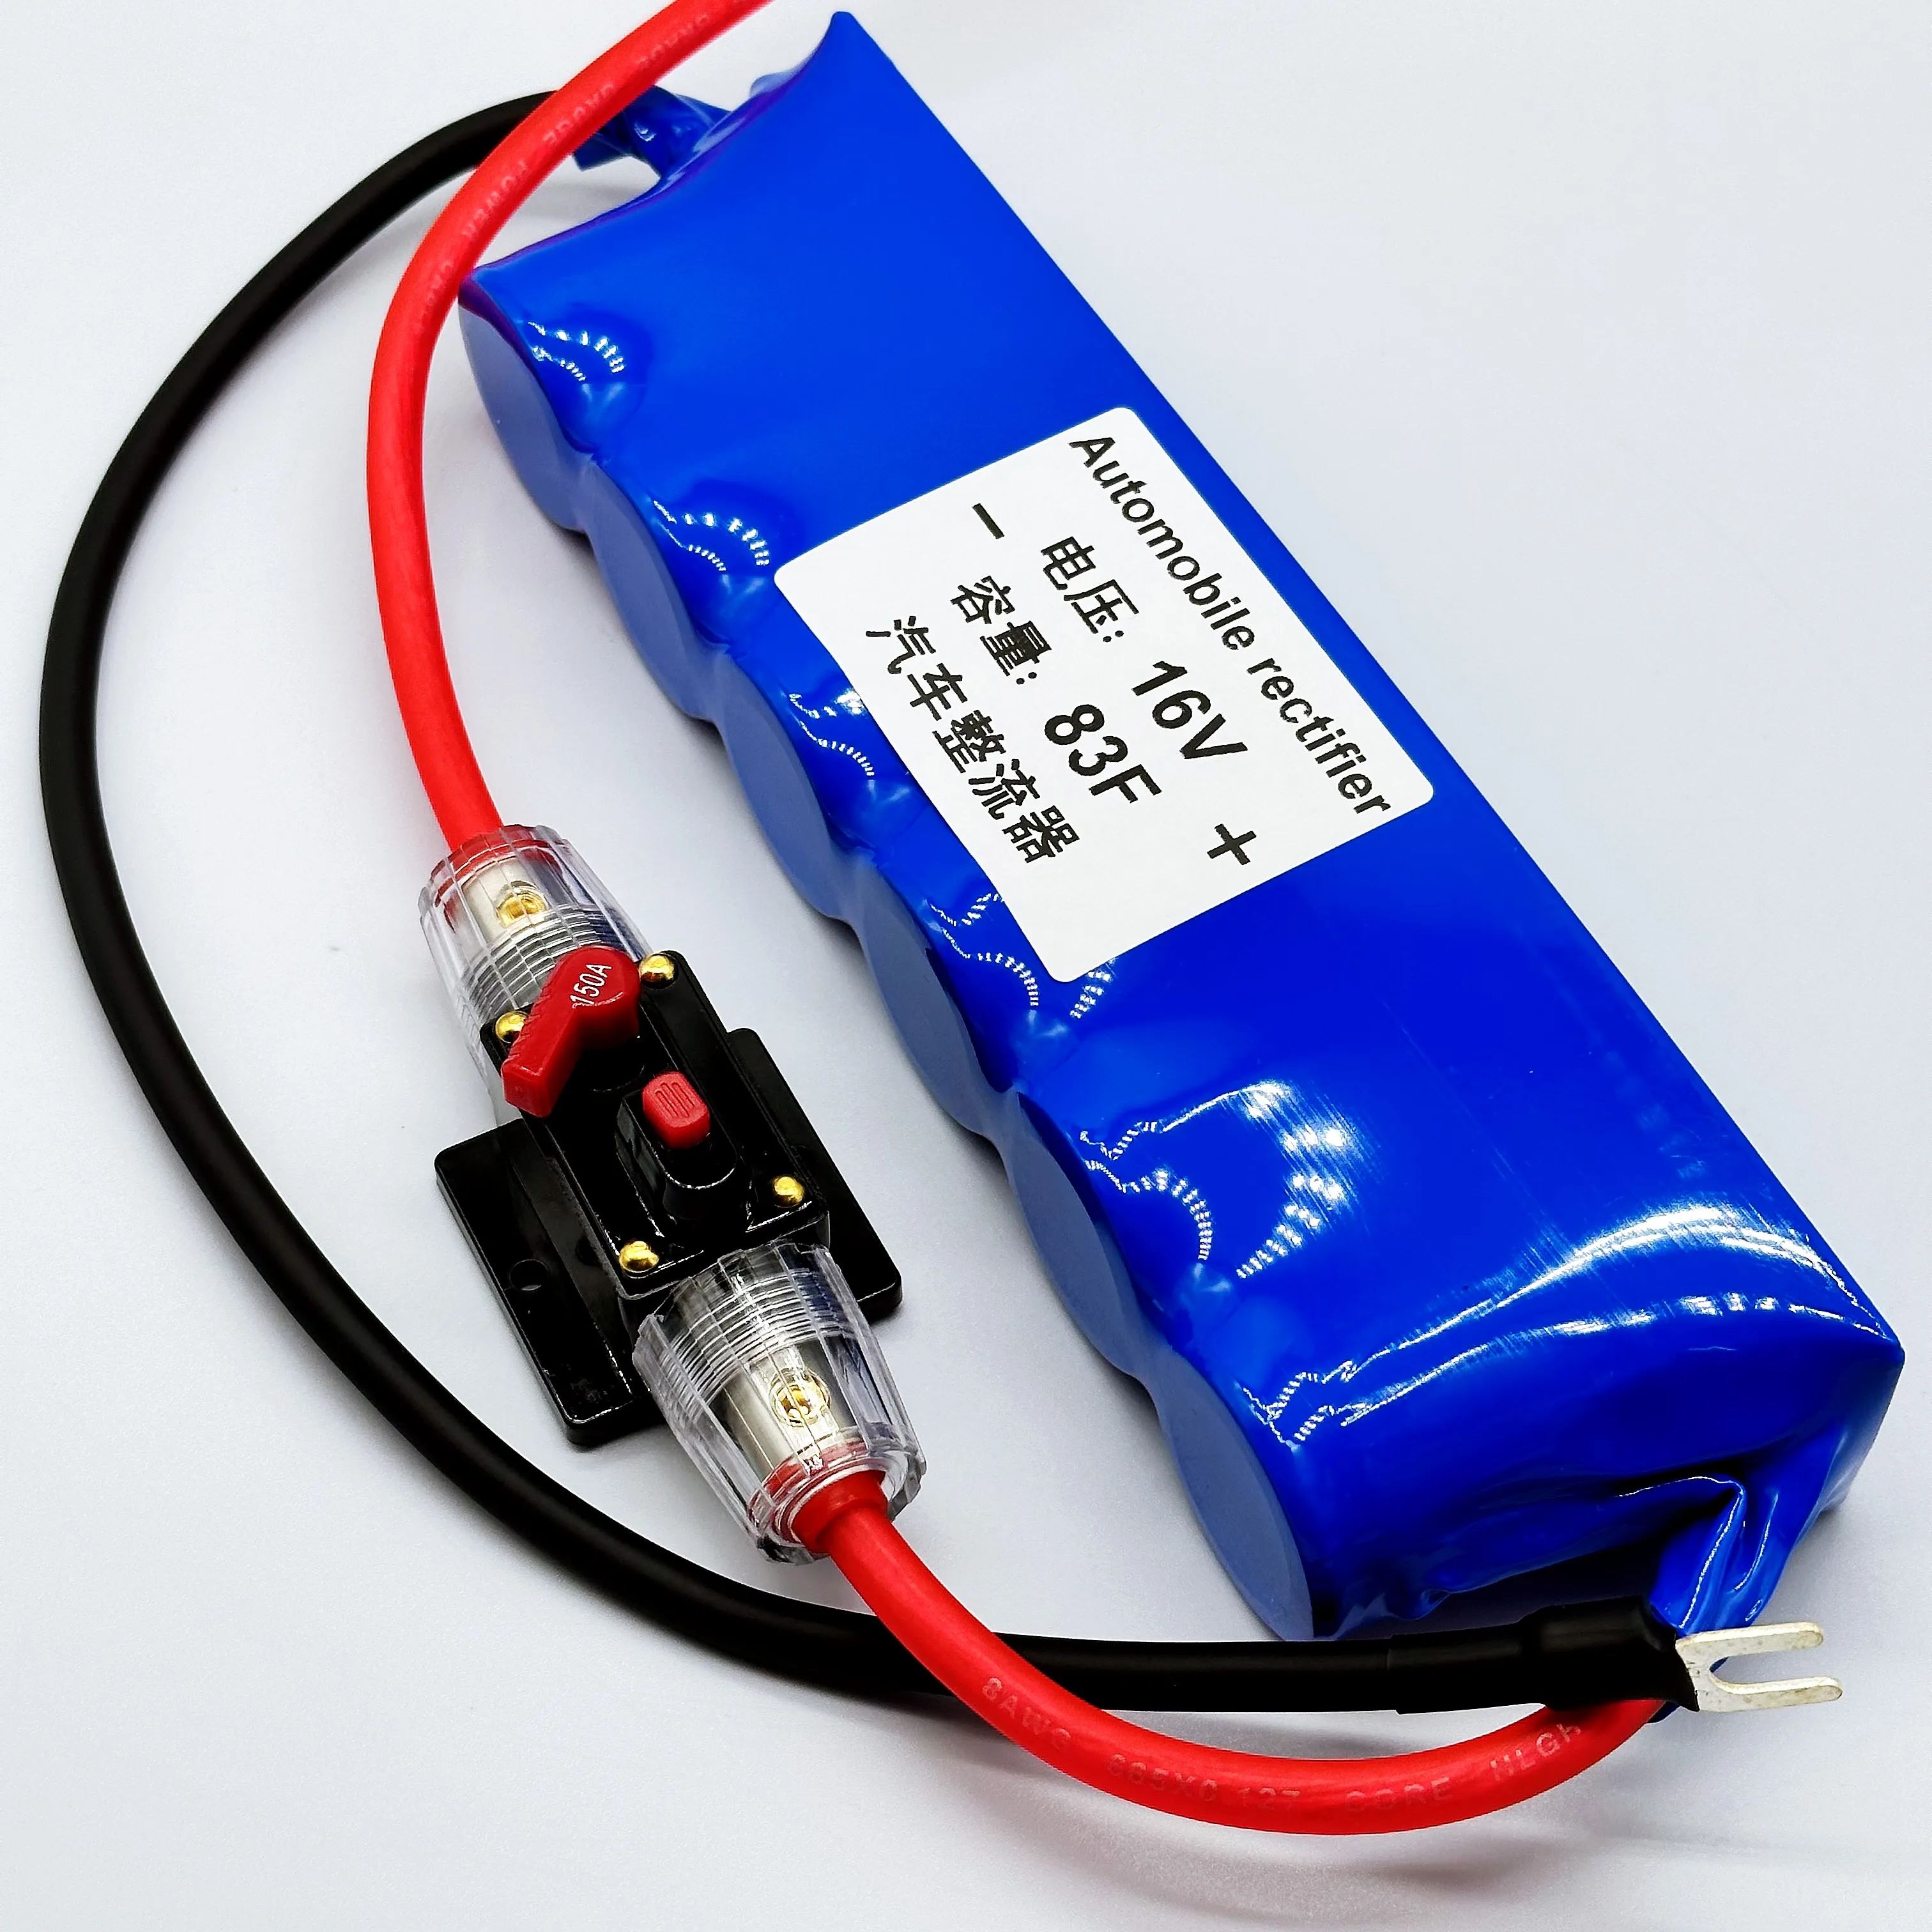 Корейский конденсатор Farah 16v83f автомобильный выпрямитель регулятор напряжения защищает заряд аккумулятора для увеличения высокой мощности